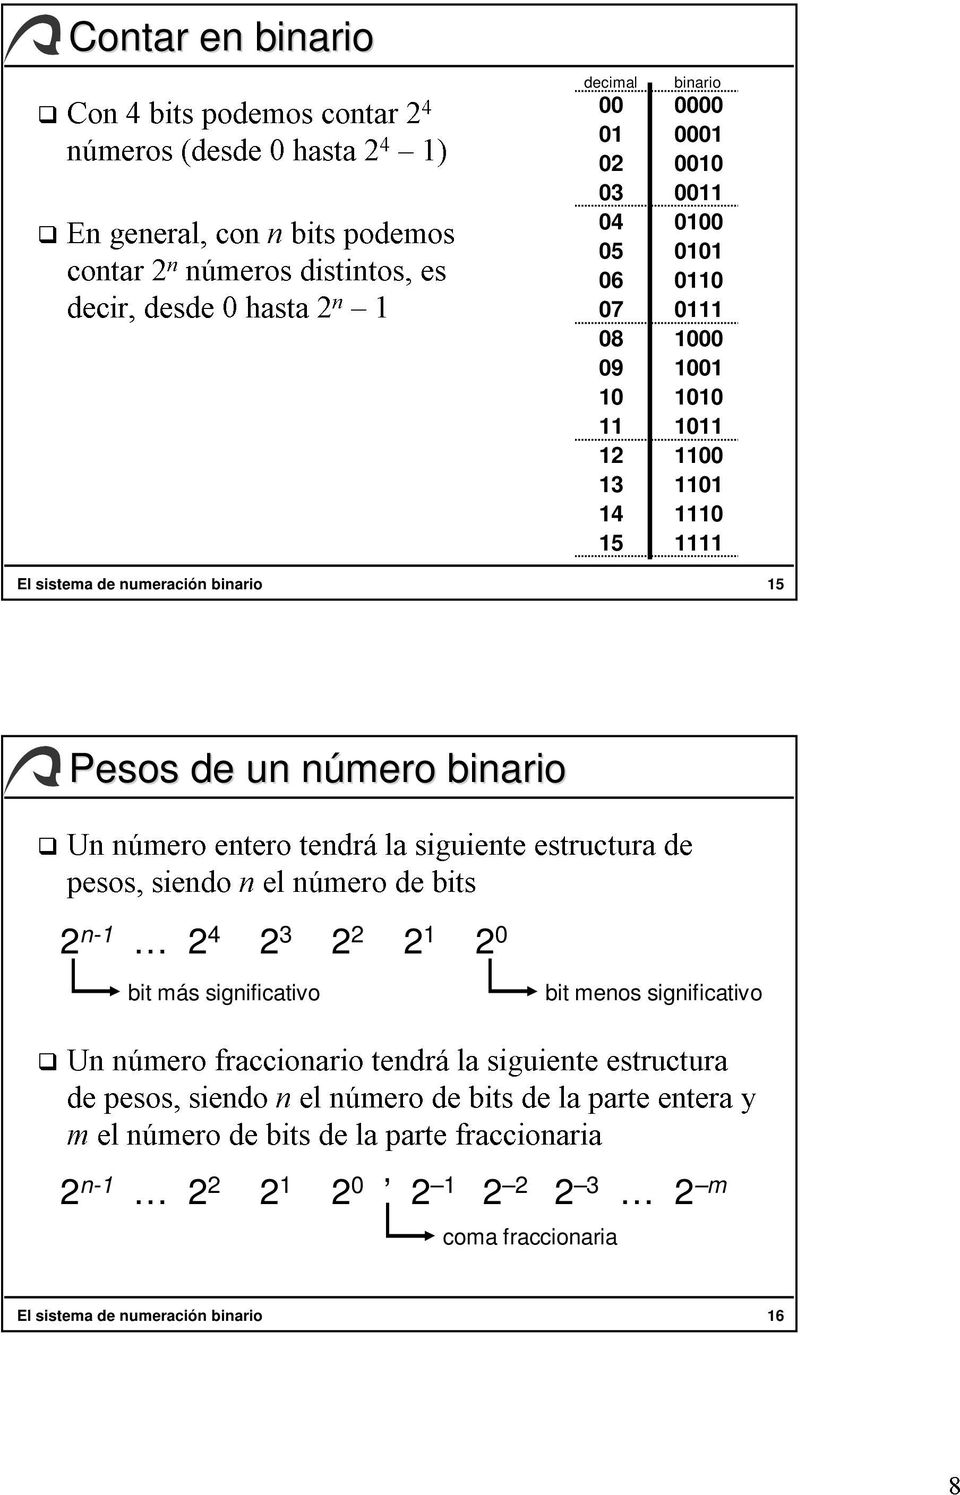 numeración binario 15 Un pesos, siendo nel número de bits de mel pesos, número siendo fraccionario de bits nel de número la tendrála parte de fraccionaria bits siguiente de la parte